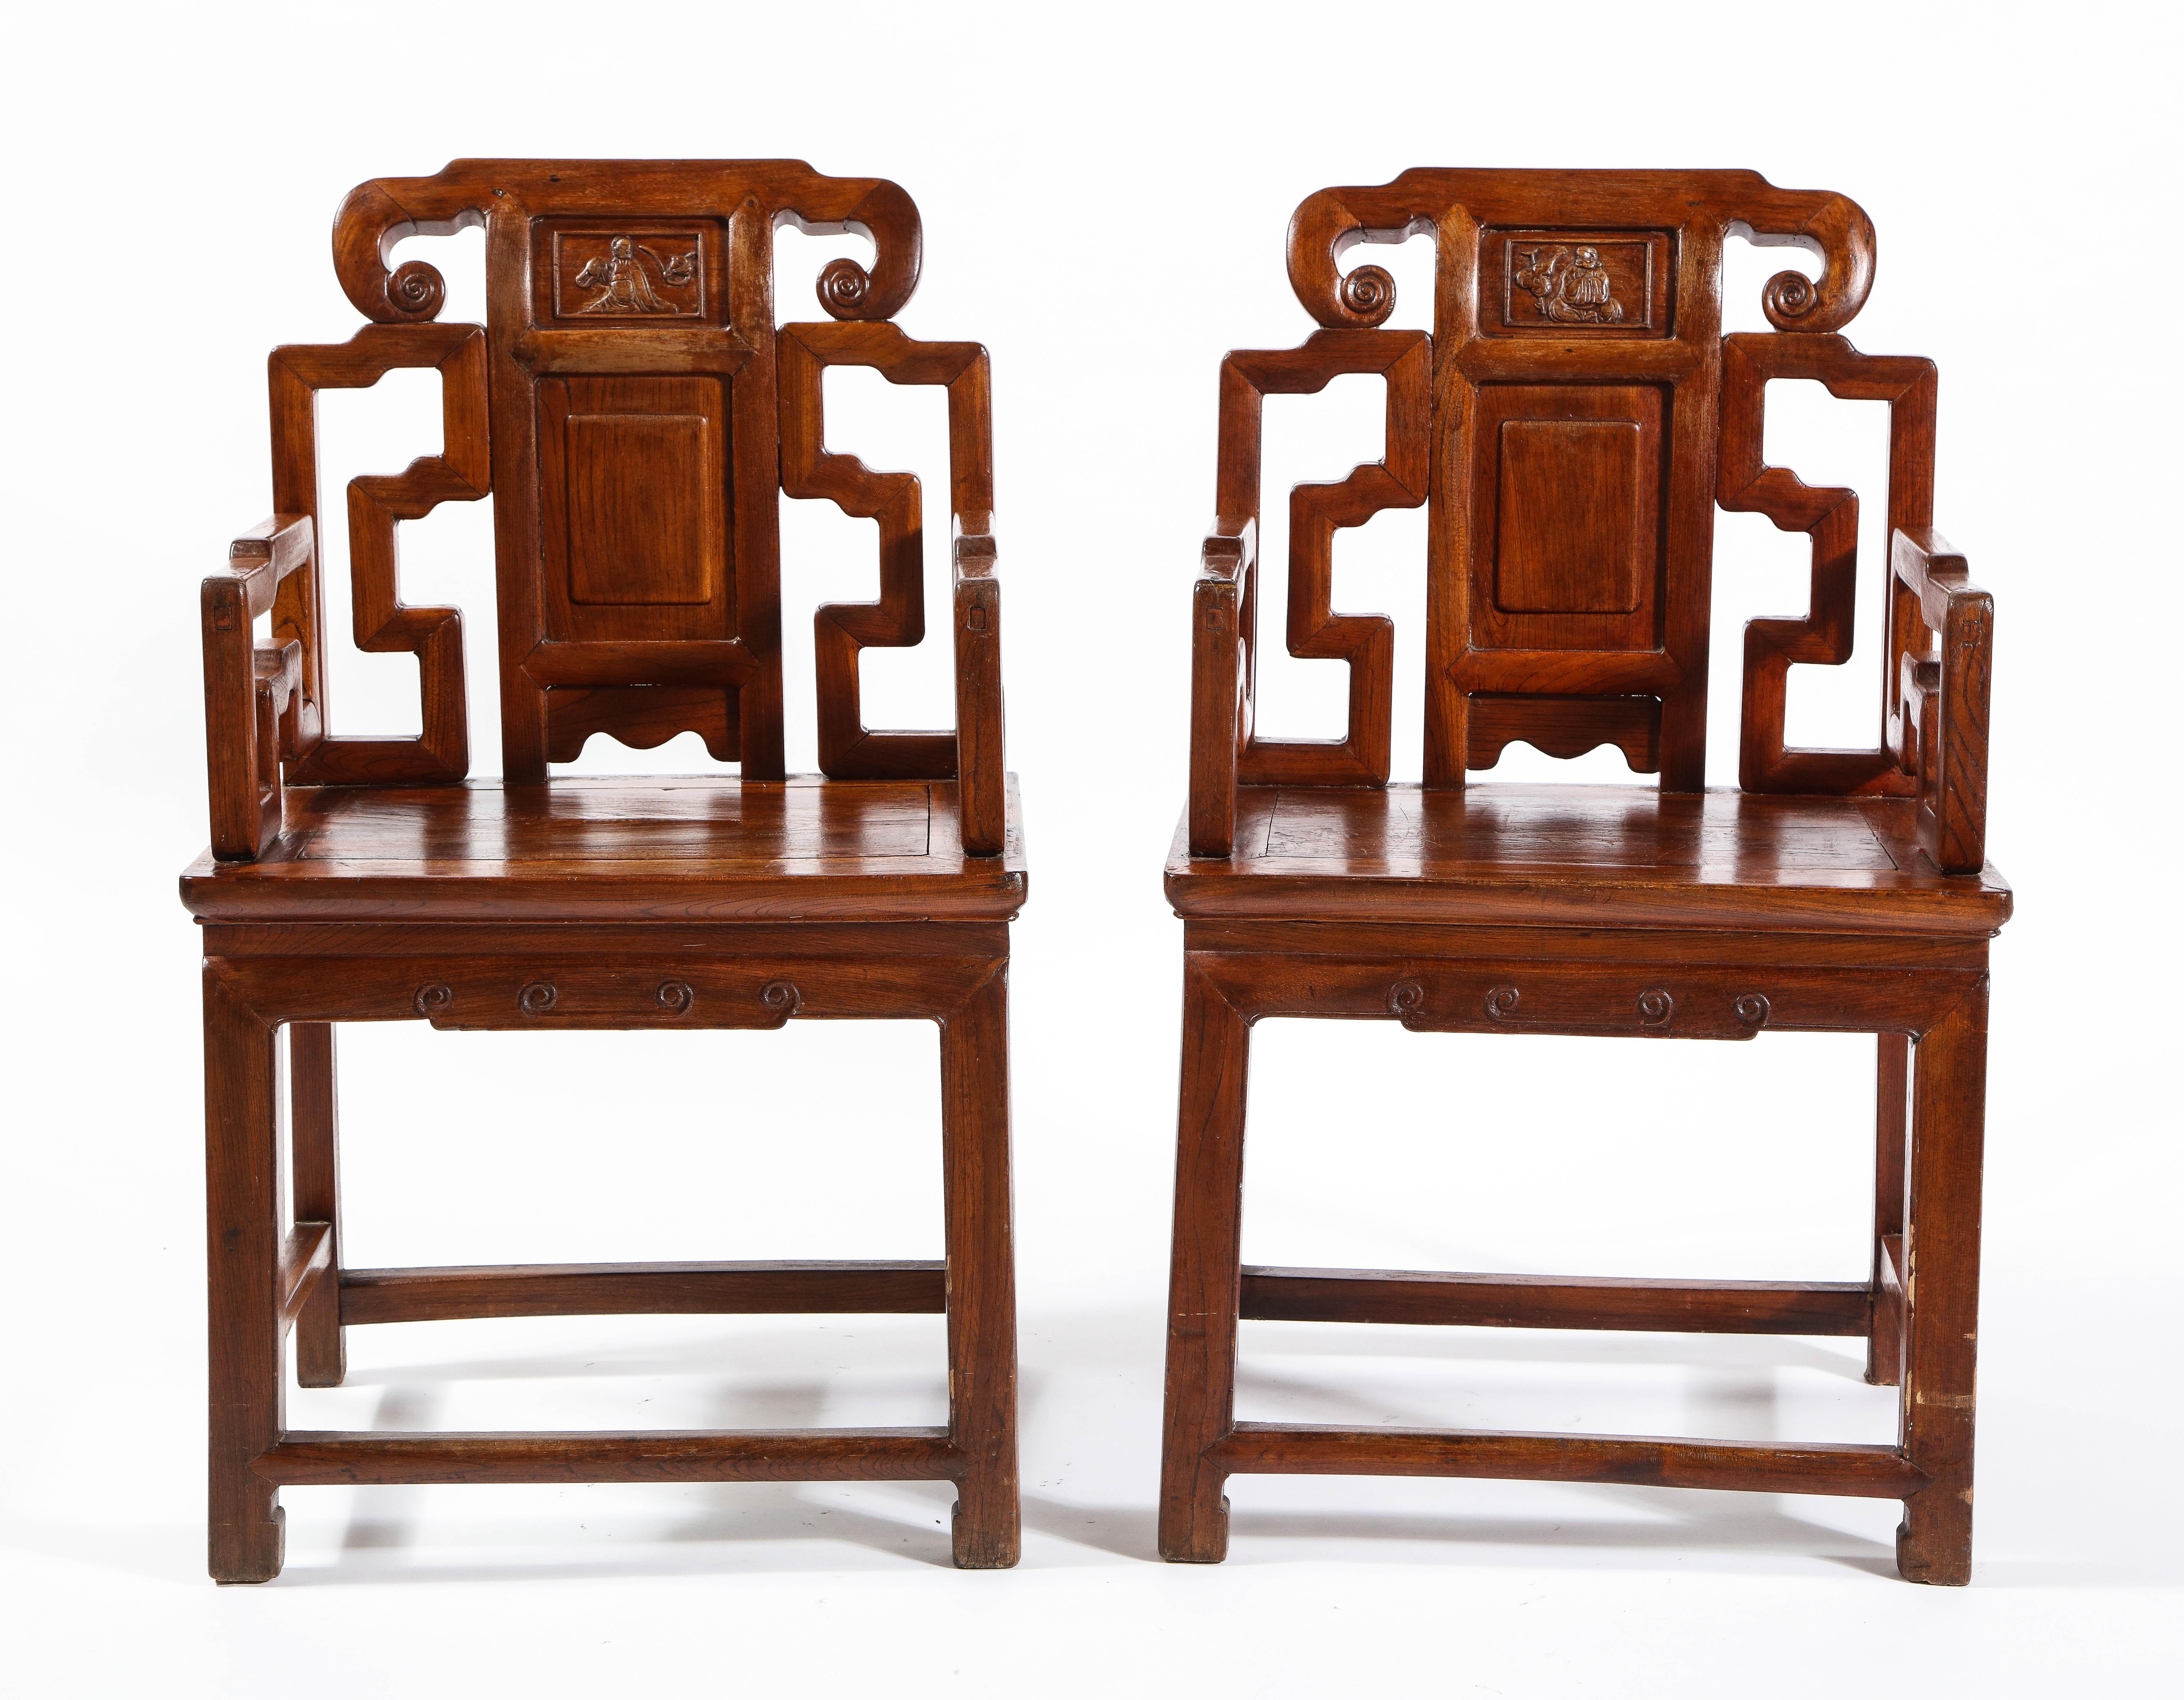 Paire d'anciennes chaises chinoises en bois dur avec des motifs ajourés et des panneaux en haut relief. Chaque chaise est magnifiquement sculptée à la main avec des détails et un savoir-faire exceptionnels. Le bois est de la meilleure qualité et